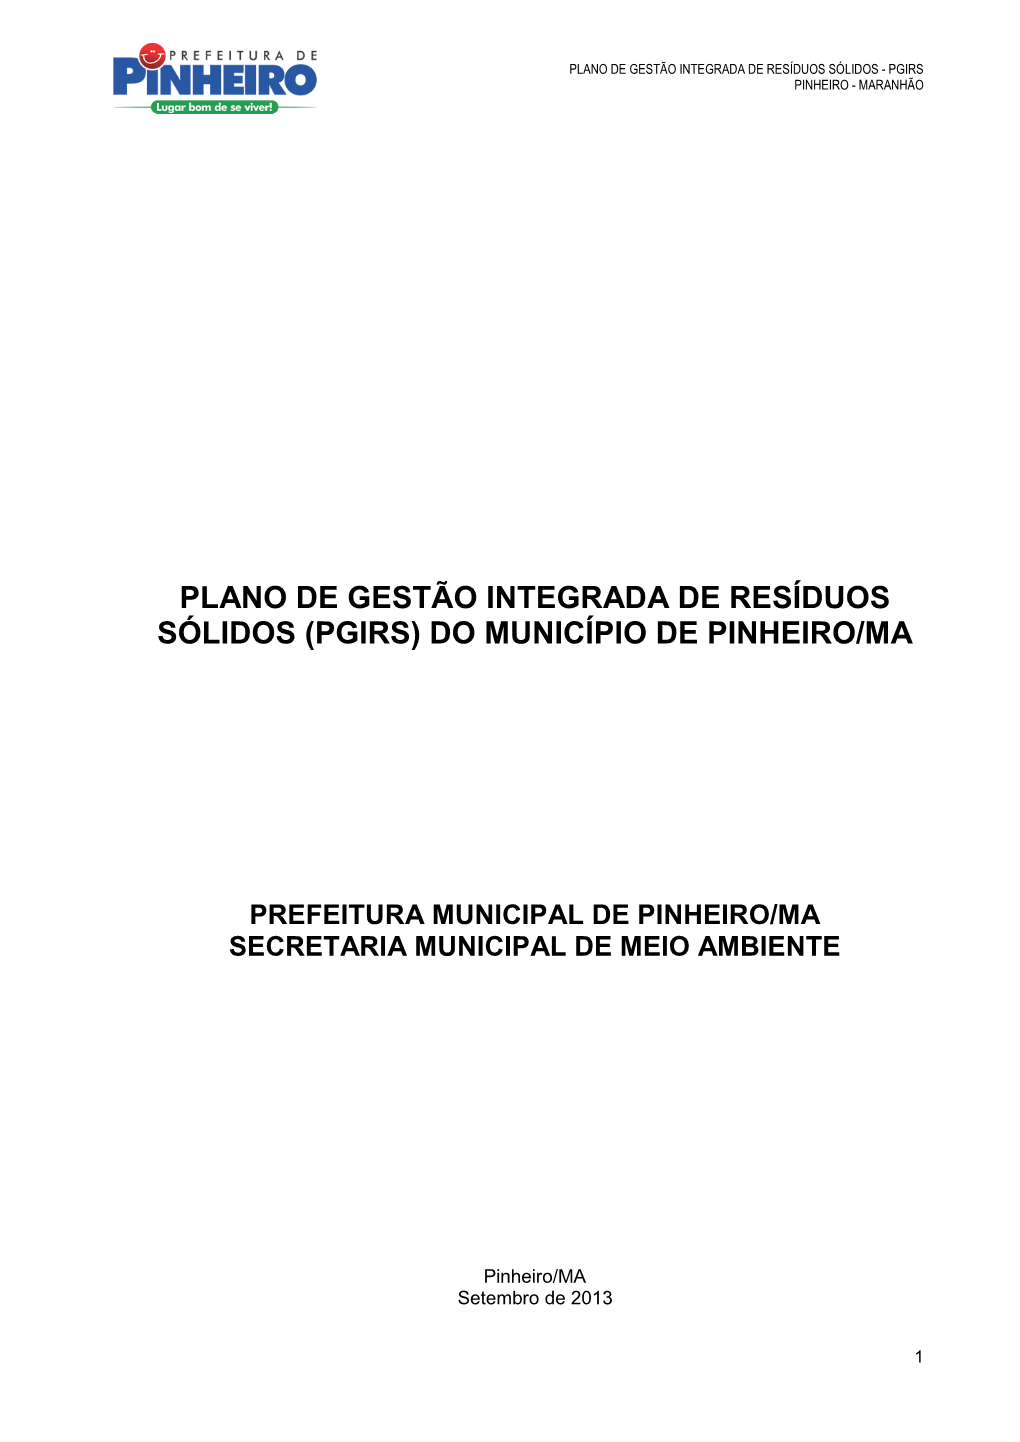 Plano De Gestão Integrada De Resíduos Sólidos (Pgirs) Do Município De Pinheiro/Ma